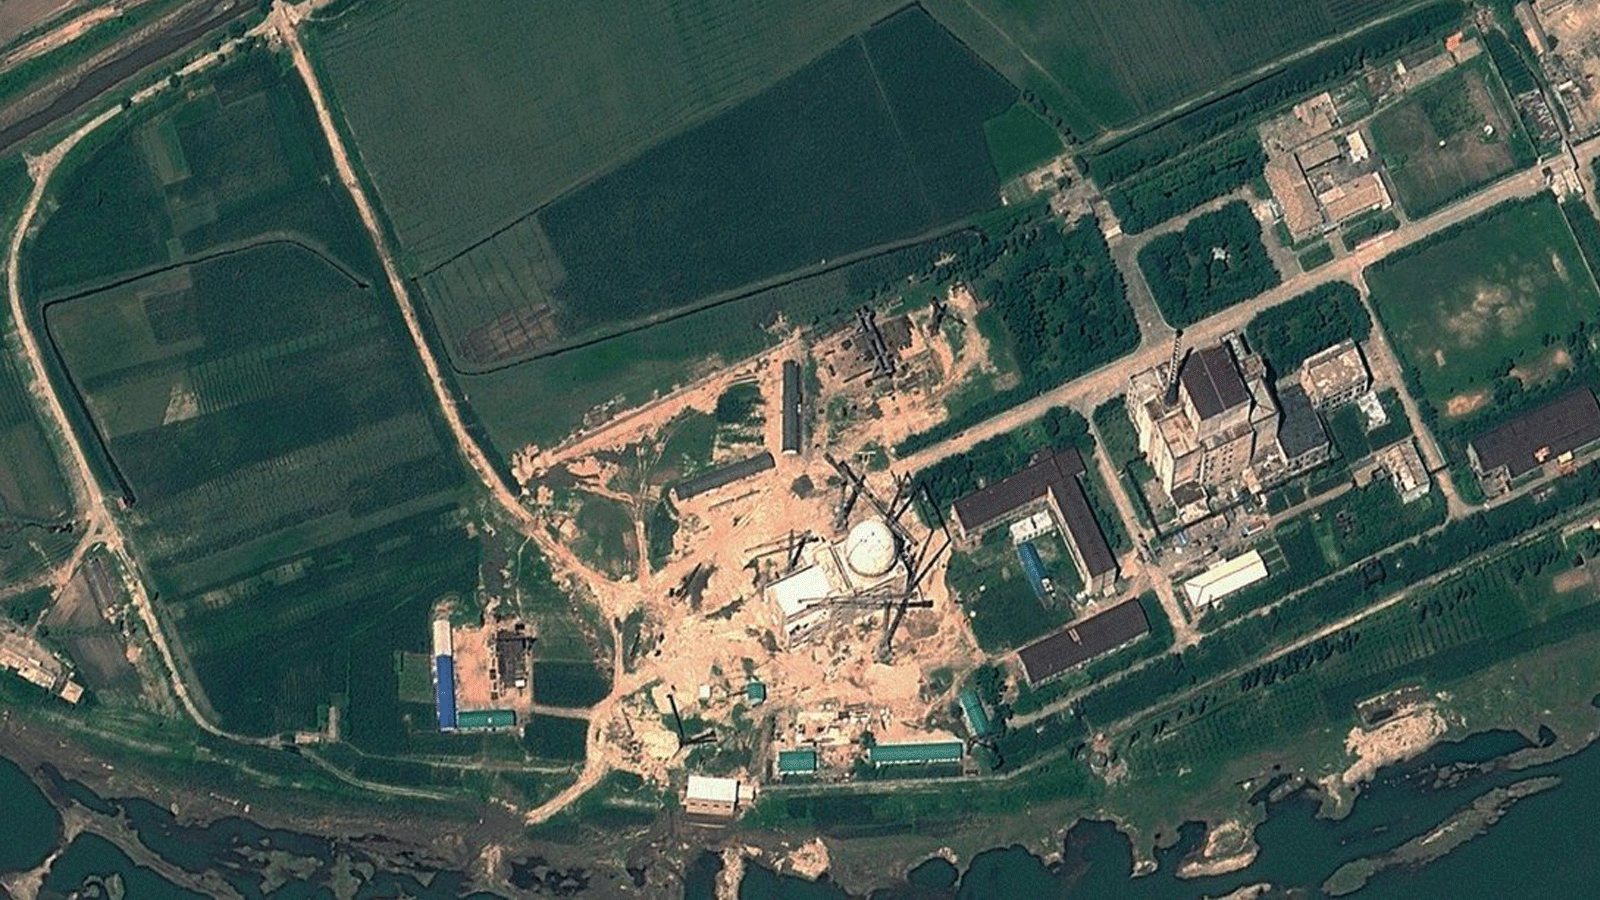 صورة القمر الصناعي التي قدمتها GeoEye في 22 آب/ أغسطس 2012 تُظهِر مركز بيونغ يانغ للأبحاث العلمية النووية في كوريا الشمالية